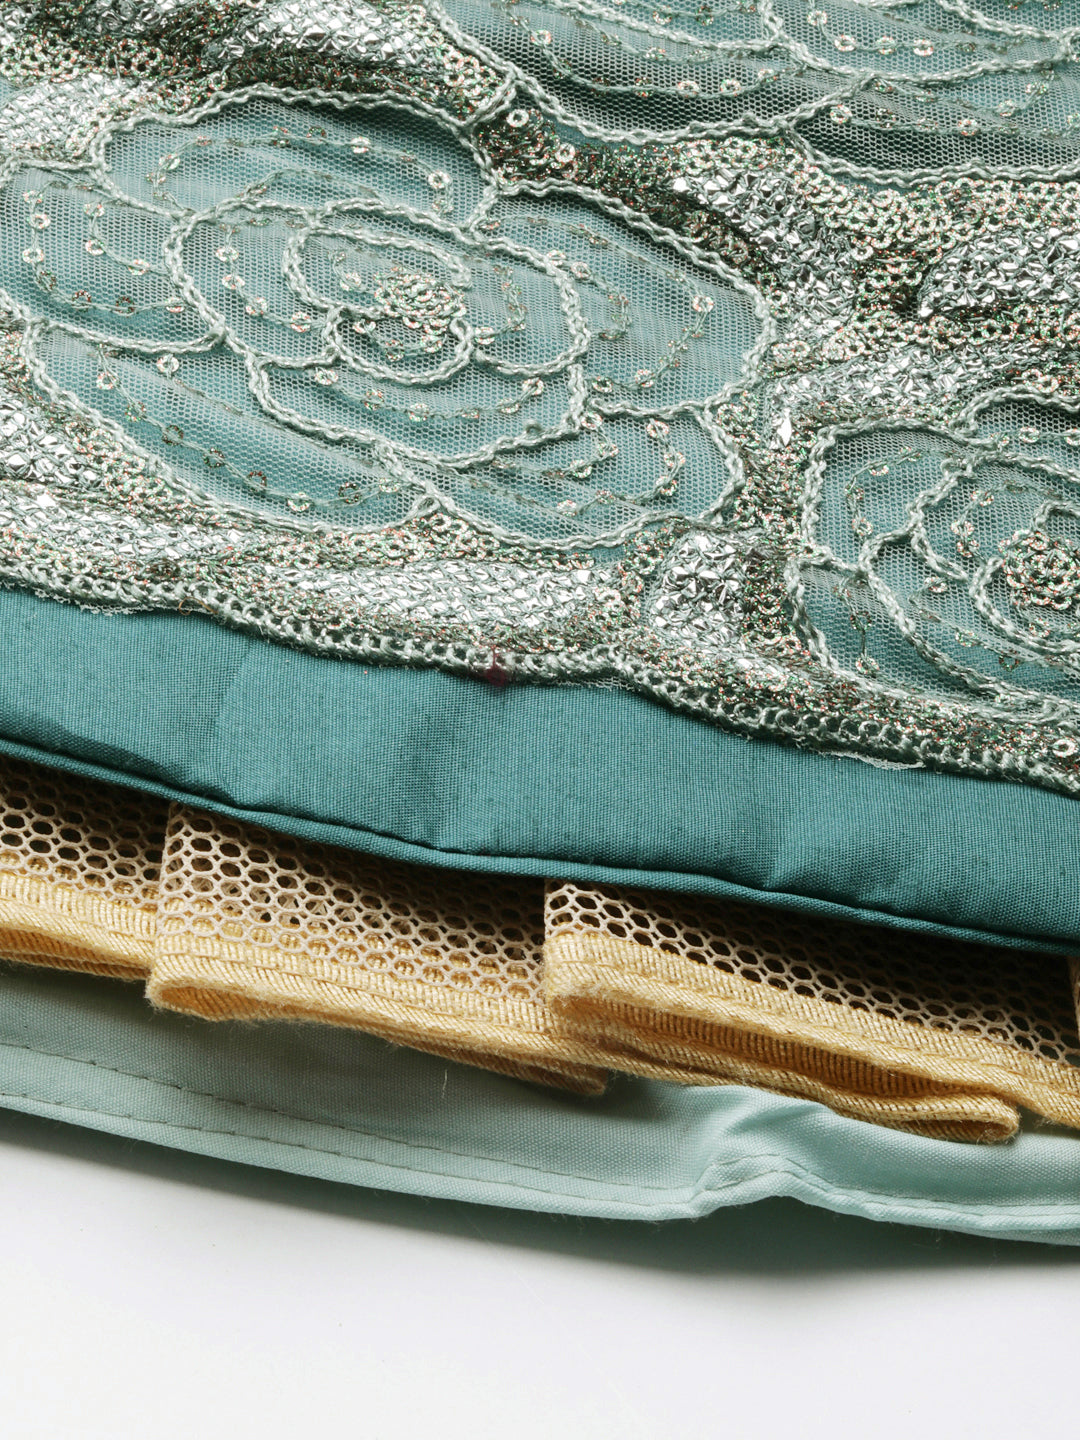 Women's Sea Green Net Gotapatti Work Fully-Stitched Lehenga & Stitched Blouse, Dupatta - Royal Dwells